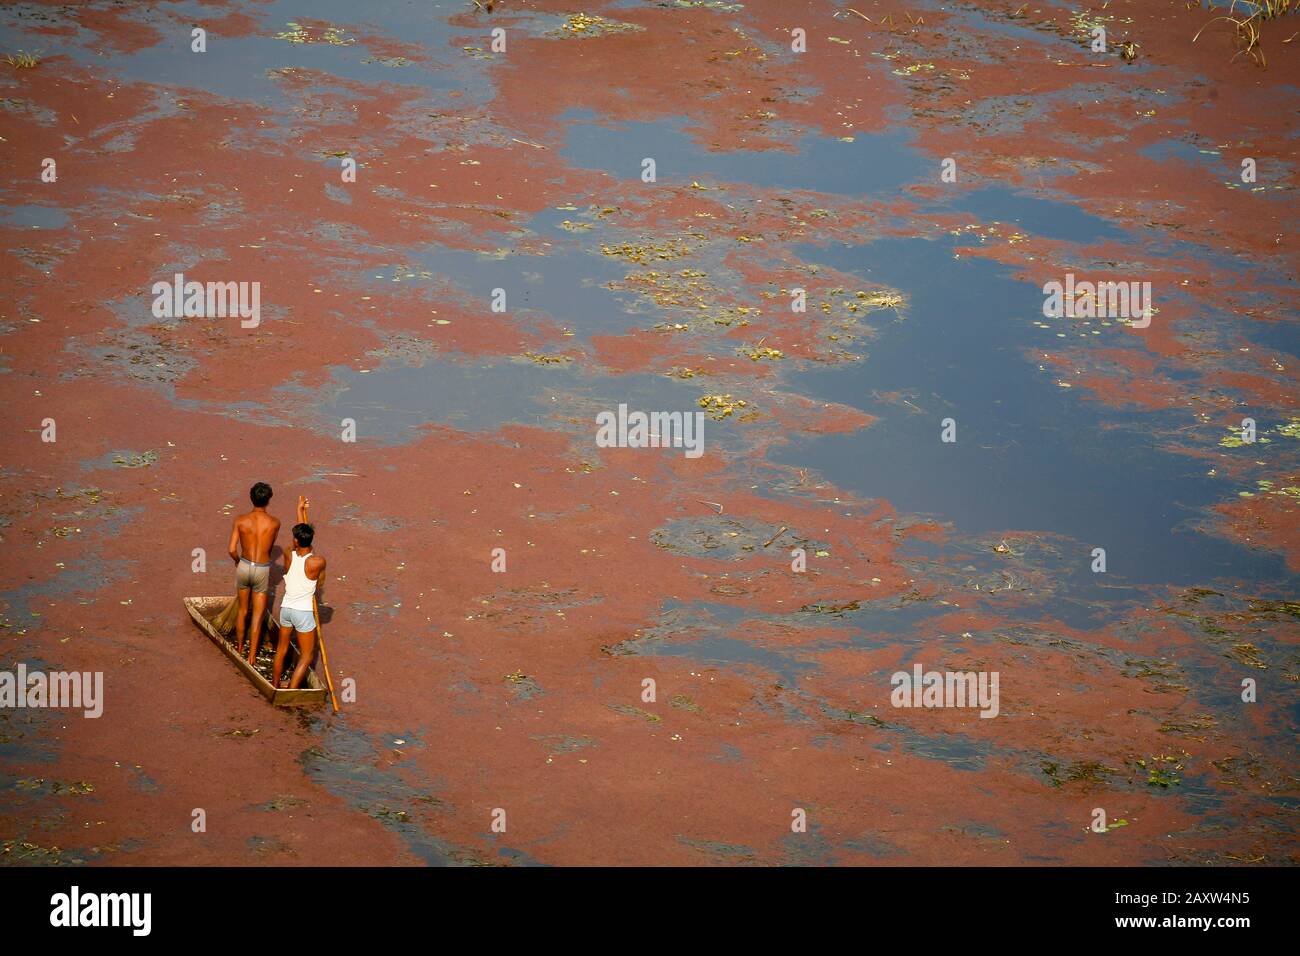 piccola barca e uomini su un lago coperto di alghe rosse Foto Stock